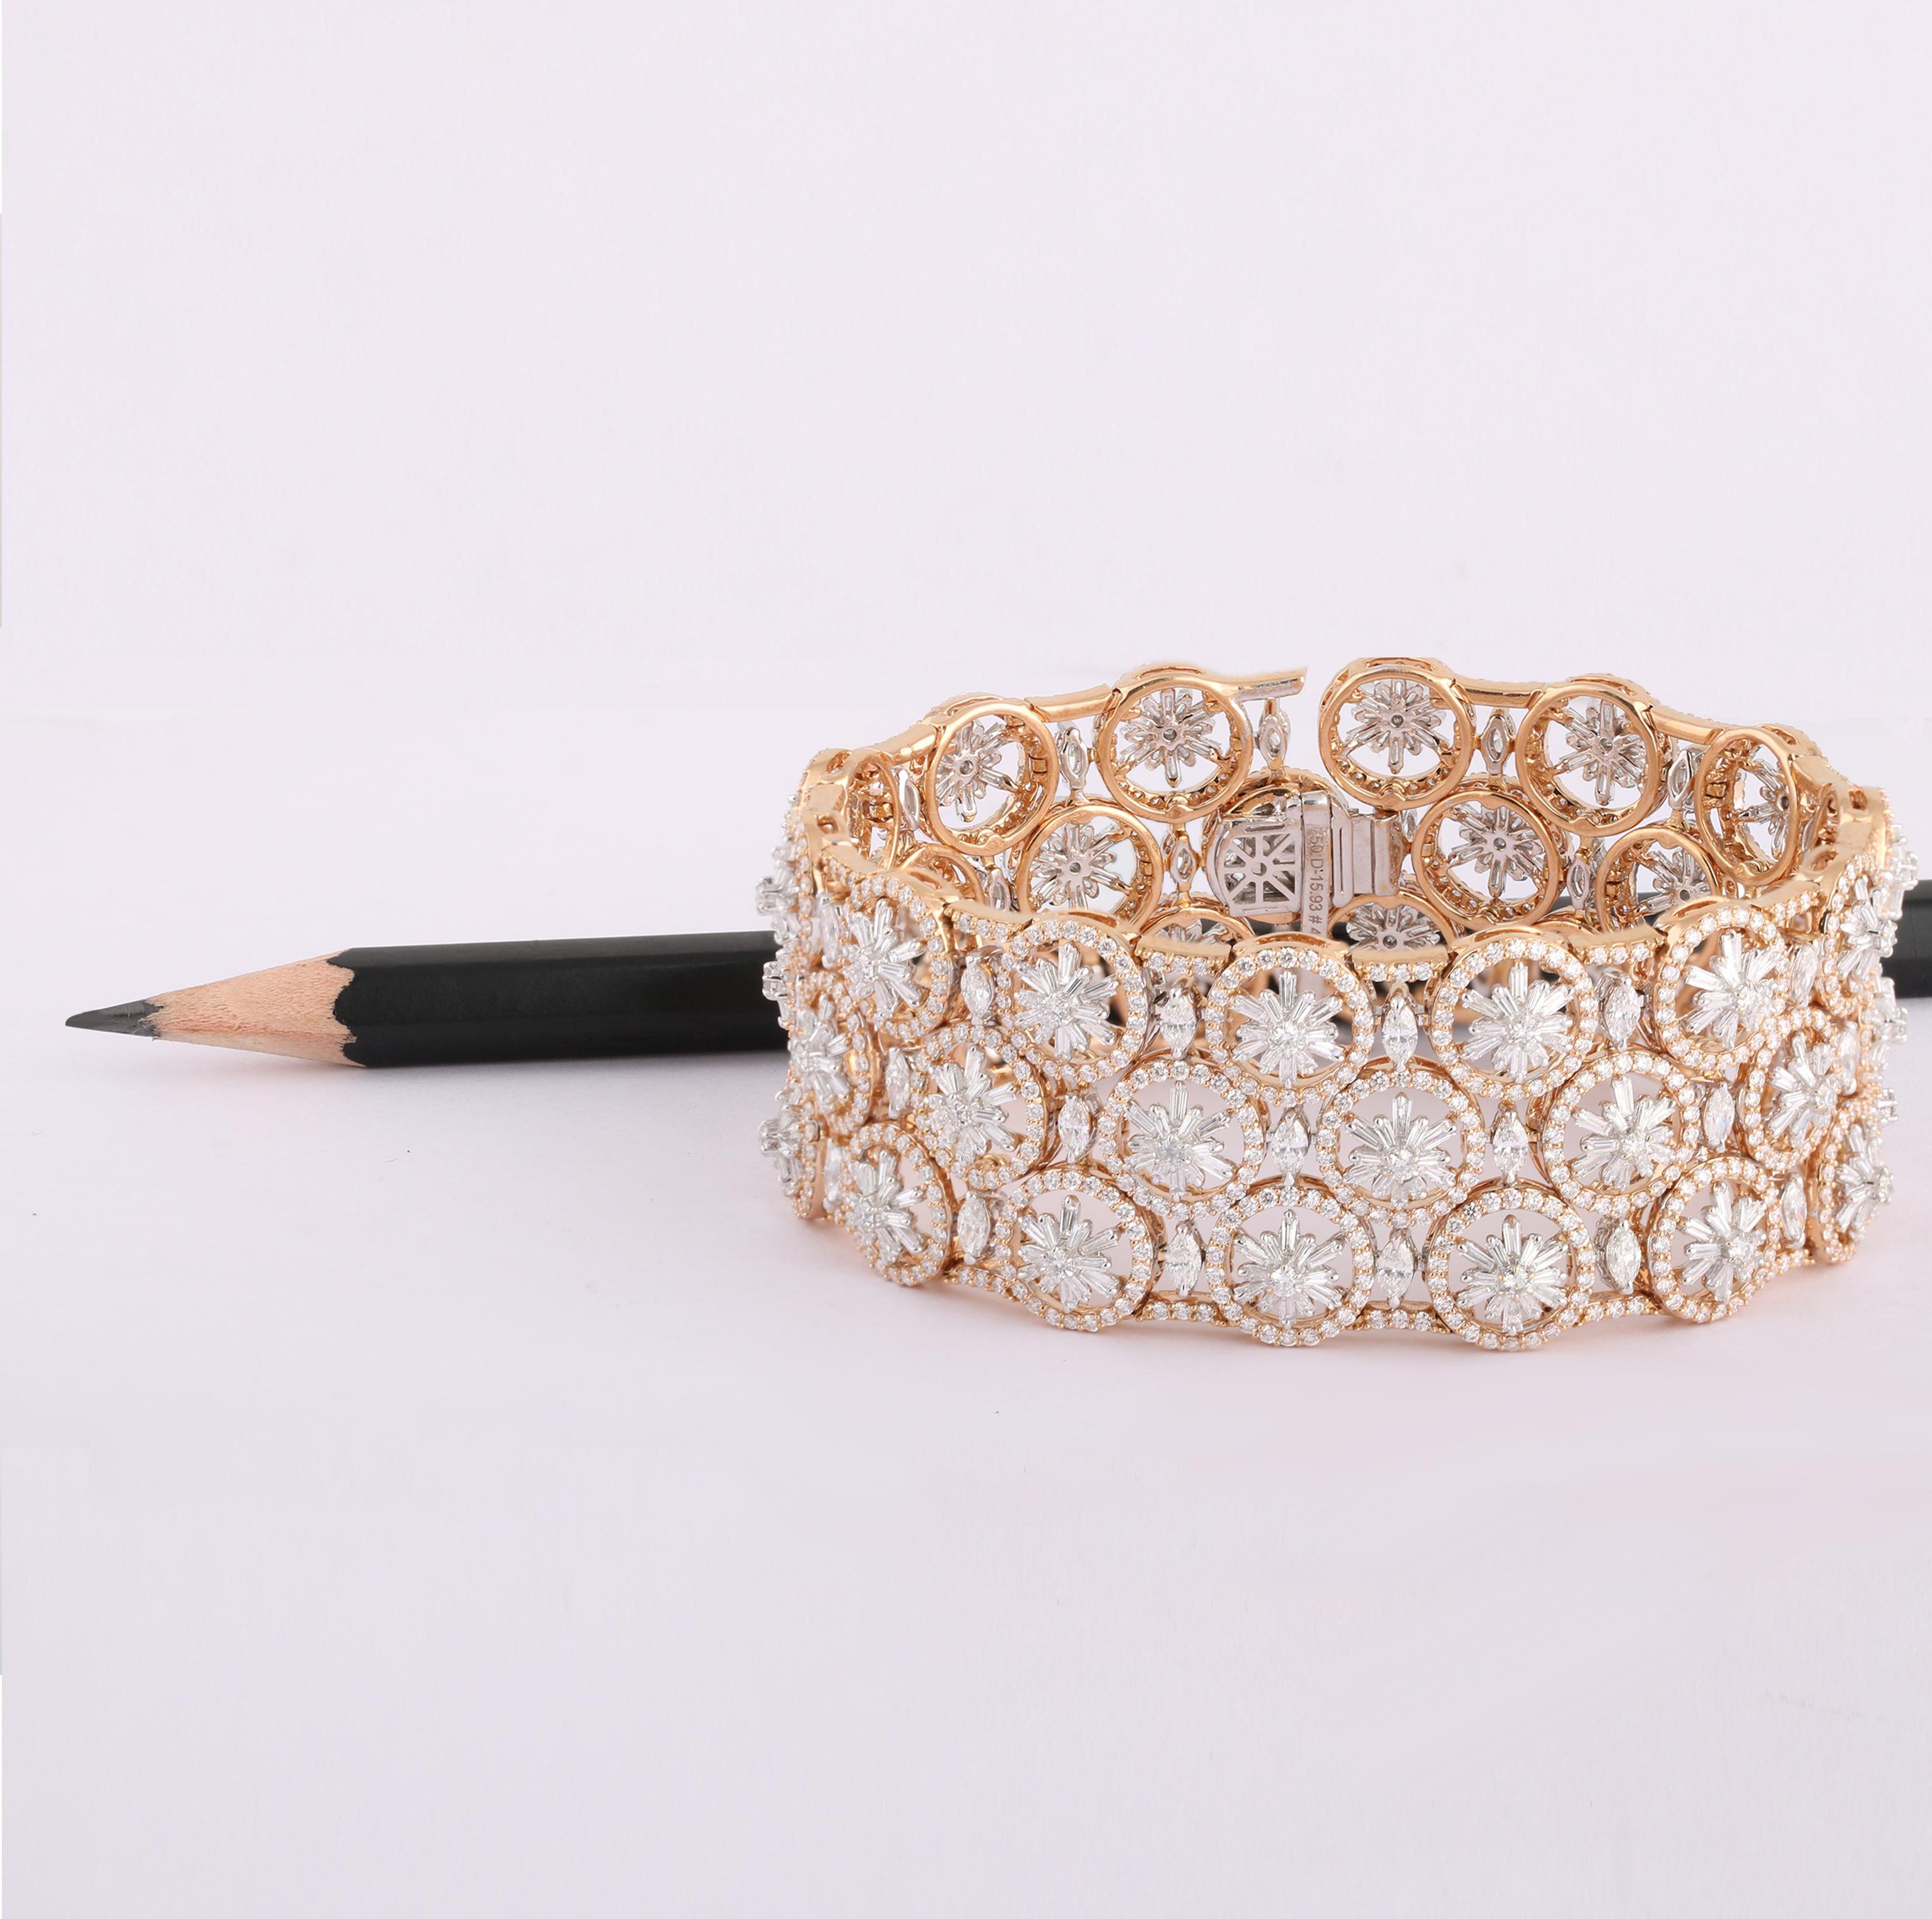 Tapered Baguette Studio Rêves 15.93 Carat Diamond Studded Floral Bracelet in 18 Karat Gold